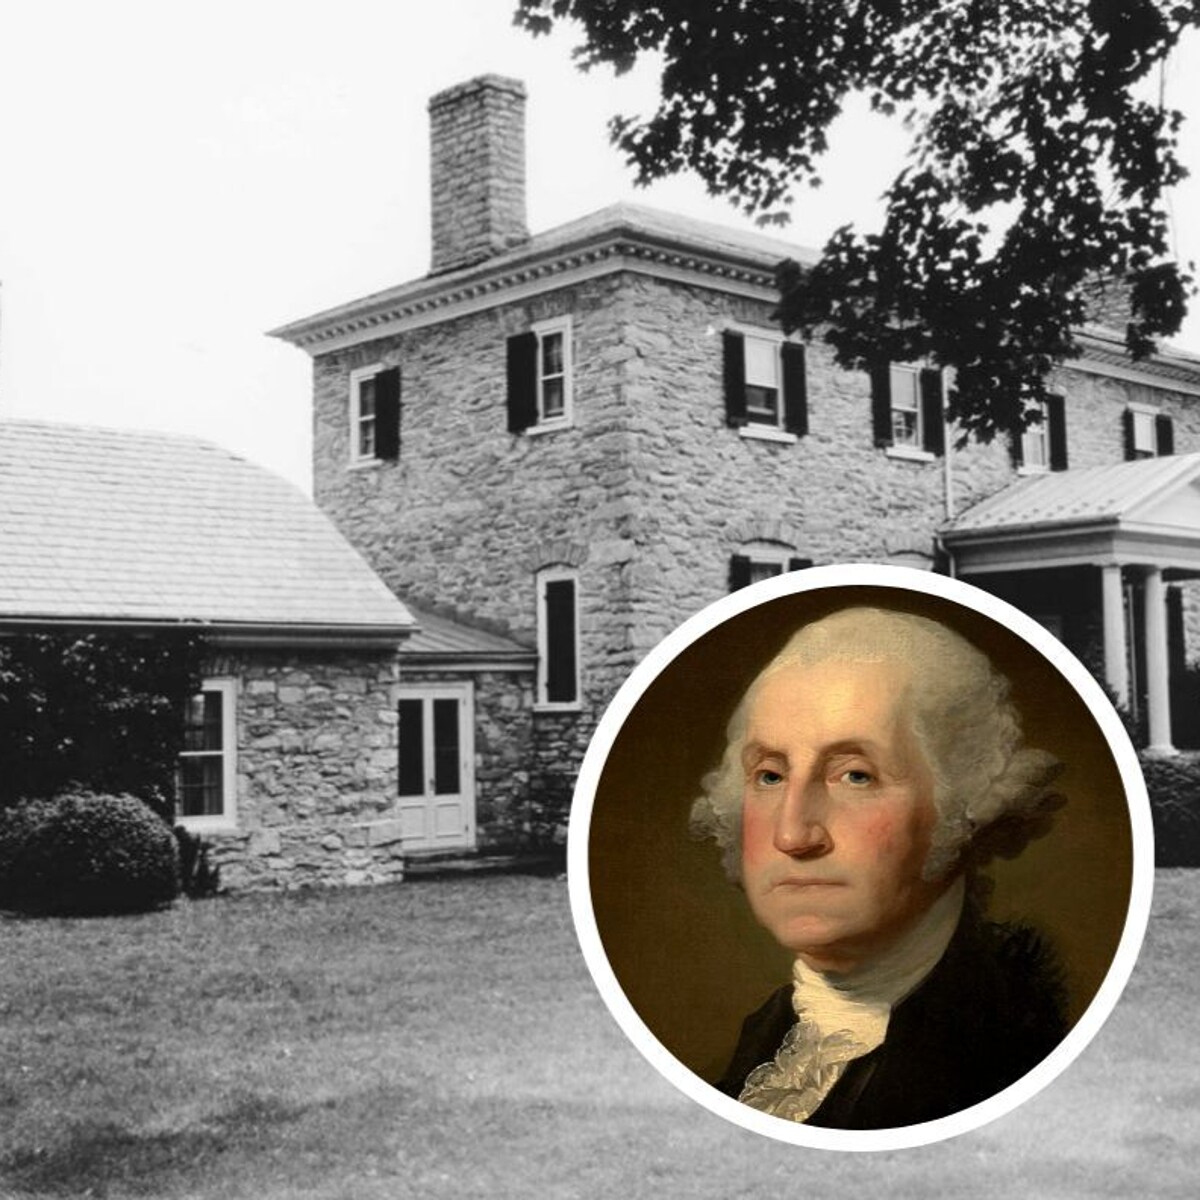 Identifican los restos perdidos de cuatro parientes del primer presidente de EE.UU. George Washington